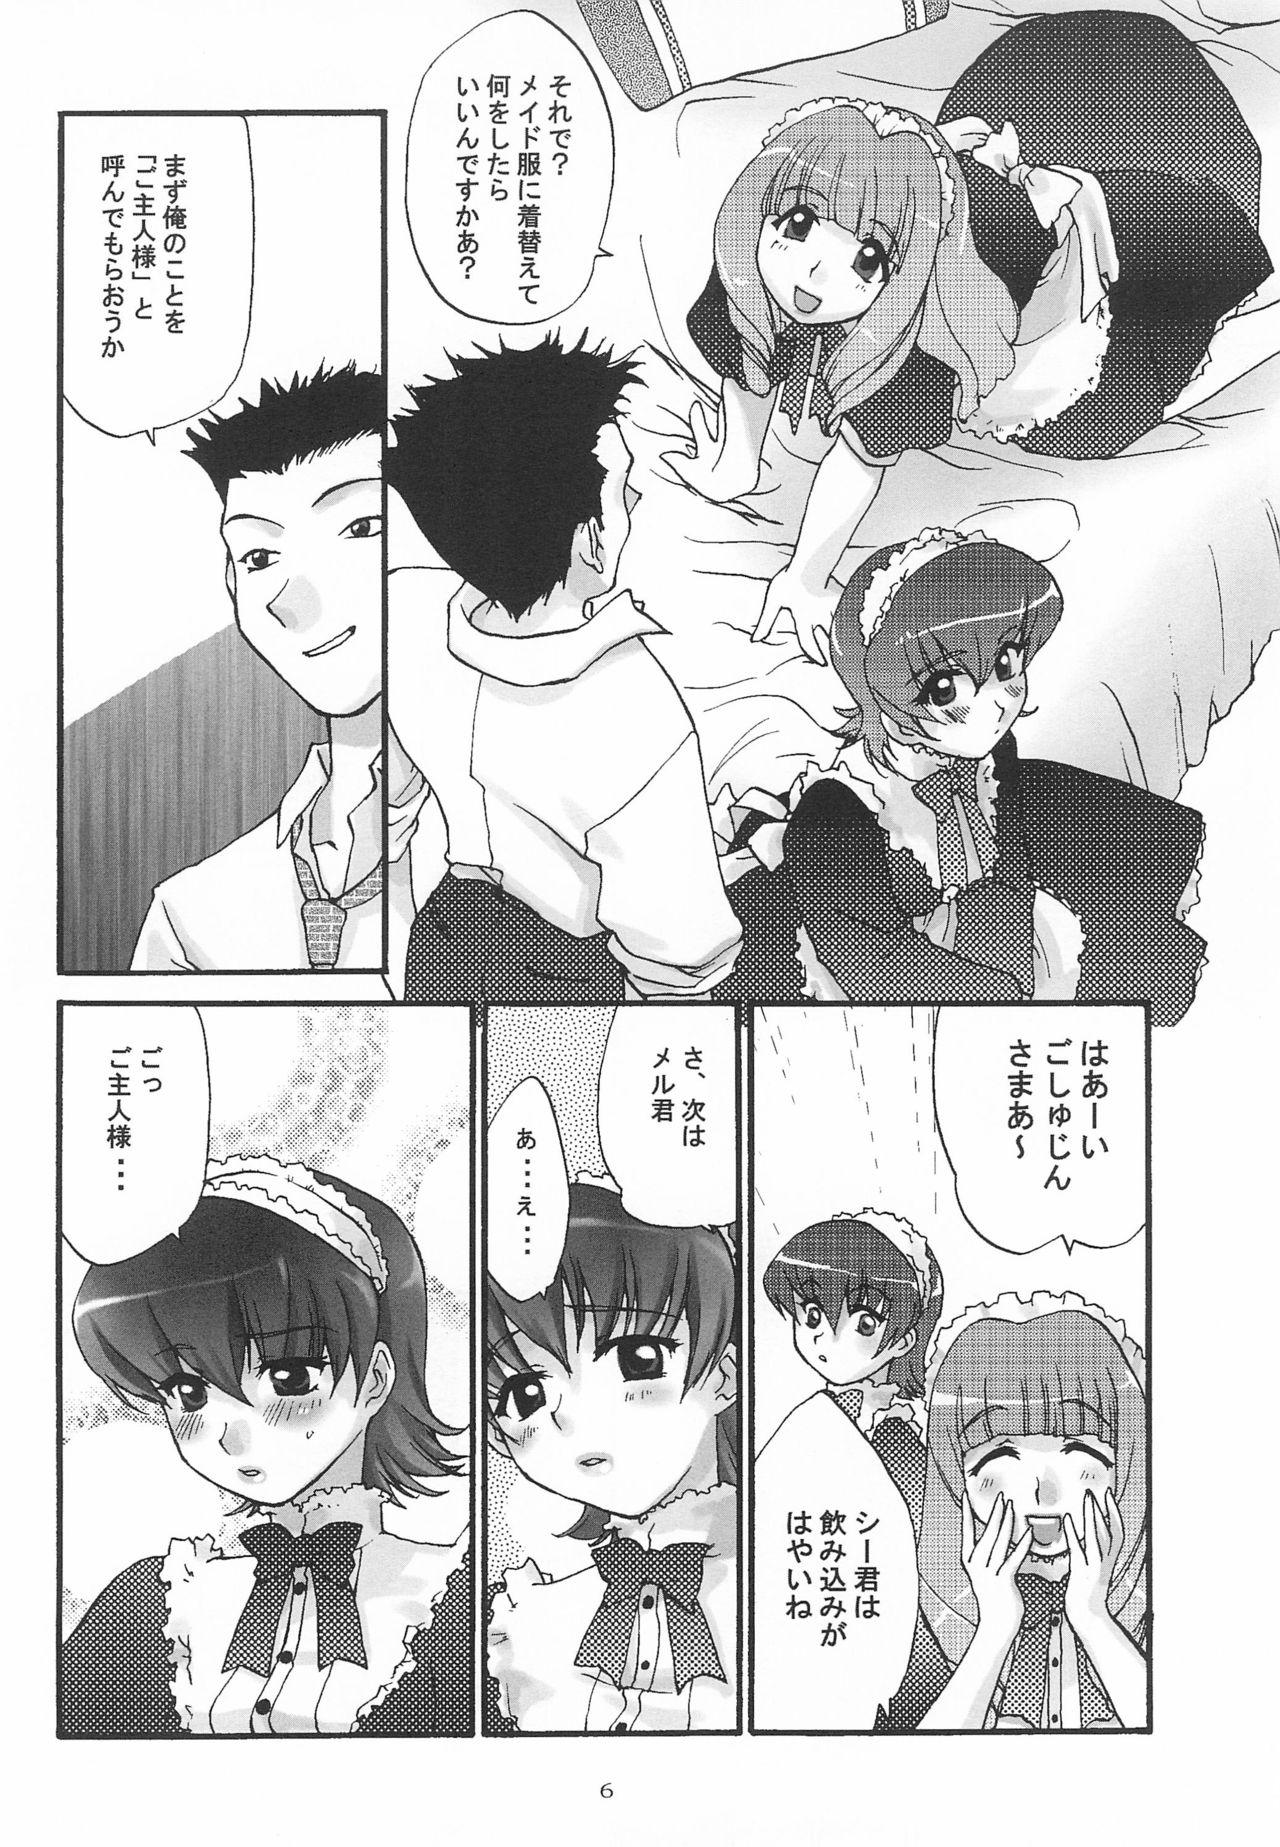 Gaydudes Alleluia - Sakura taisen | sakura wars Mallu - Page 8